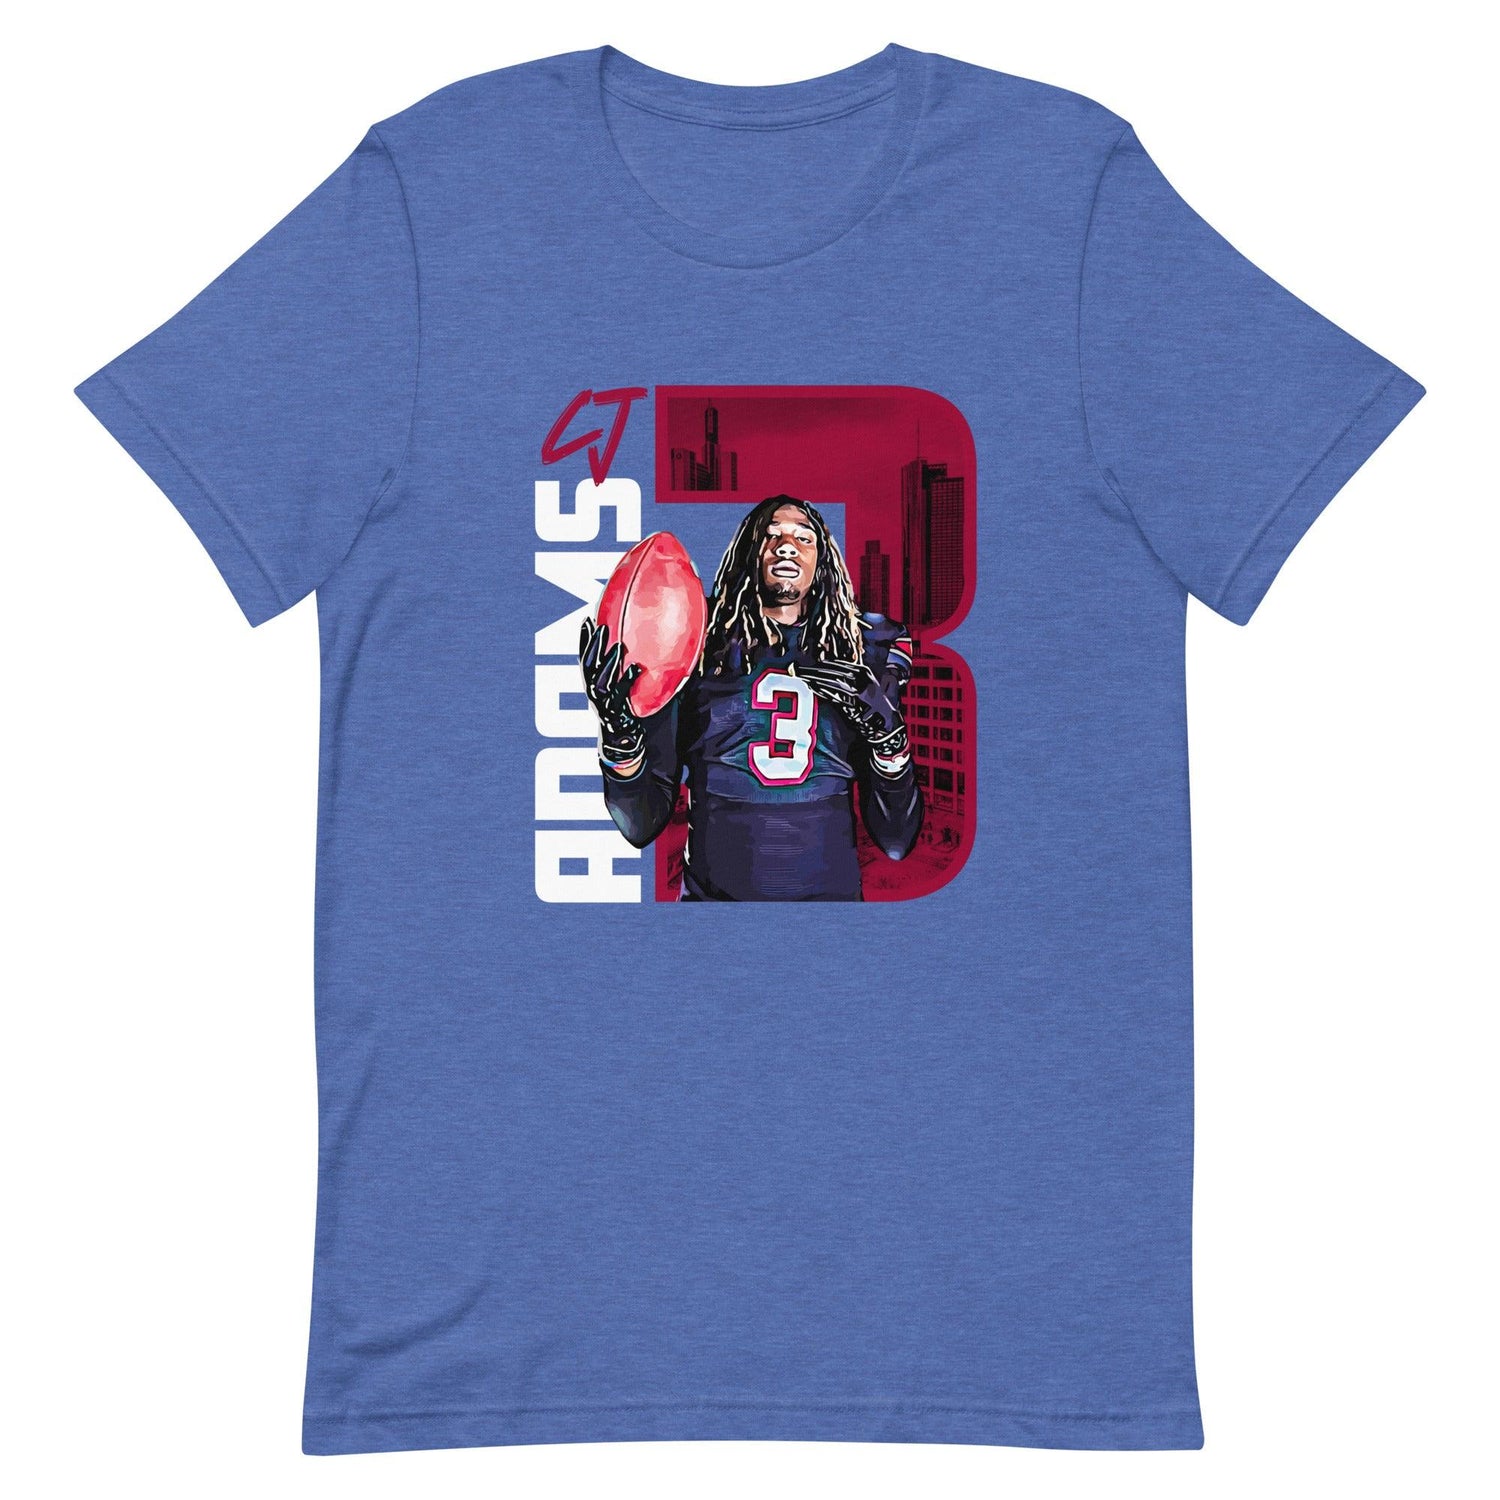 CJ Adams "Gameday" t-shirt - Fan Arch